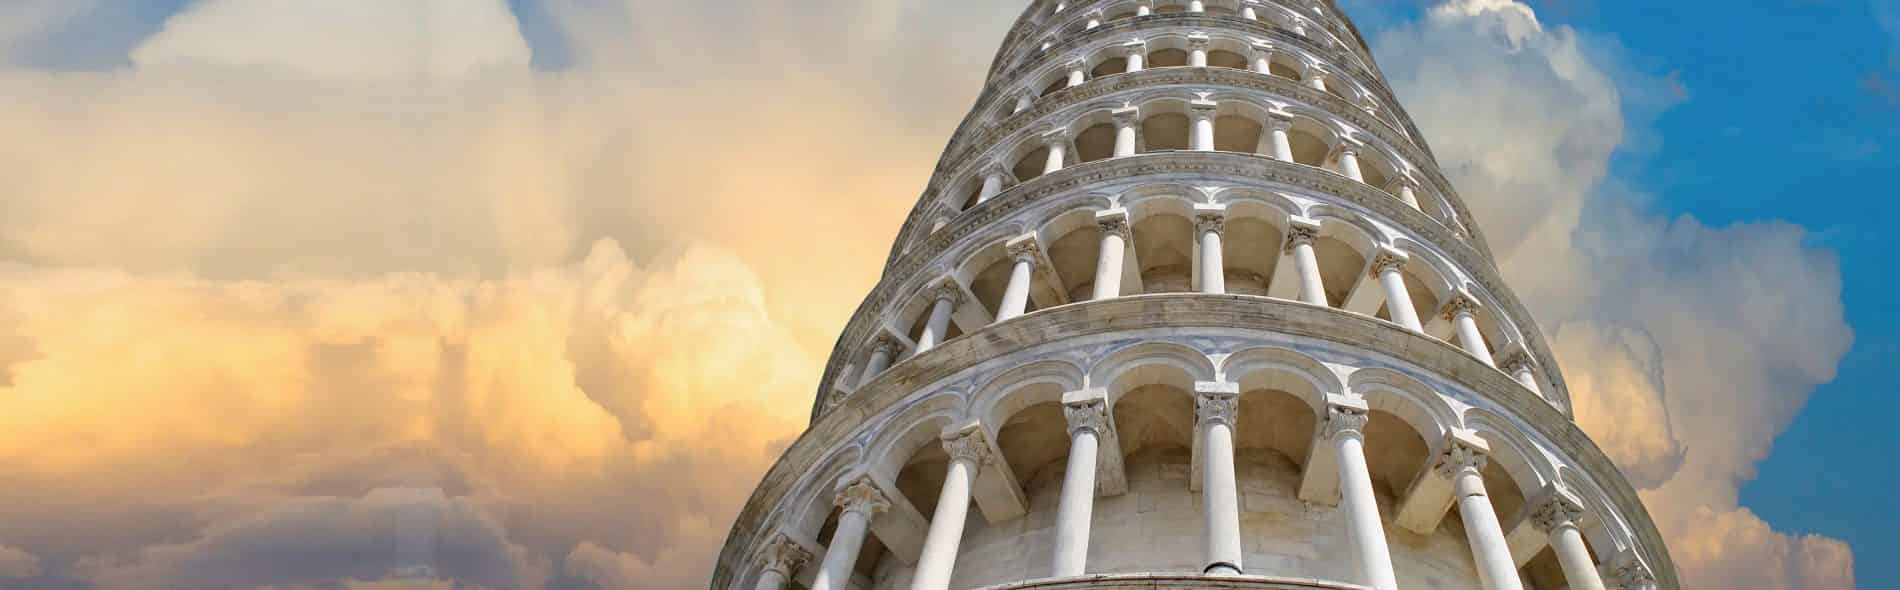 Walking Guided Tour of Pisa